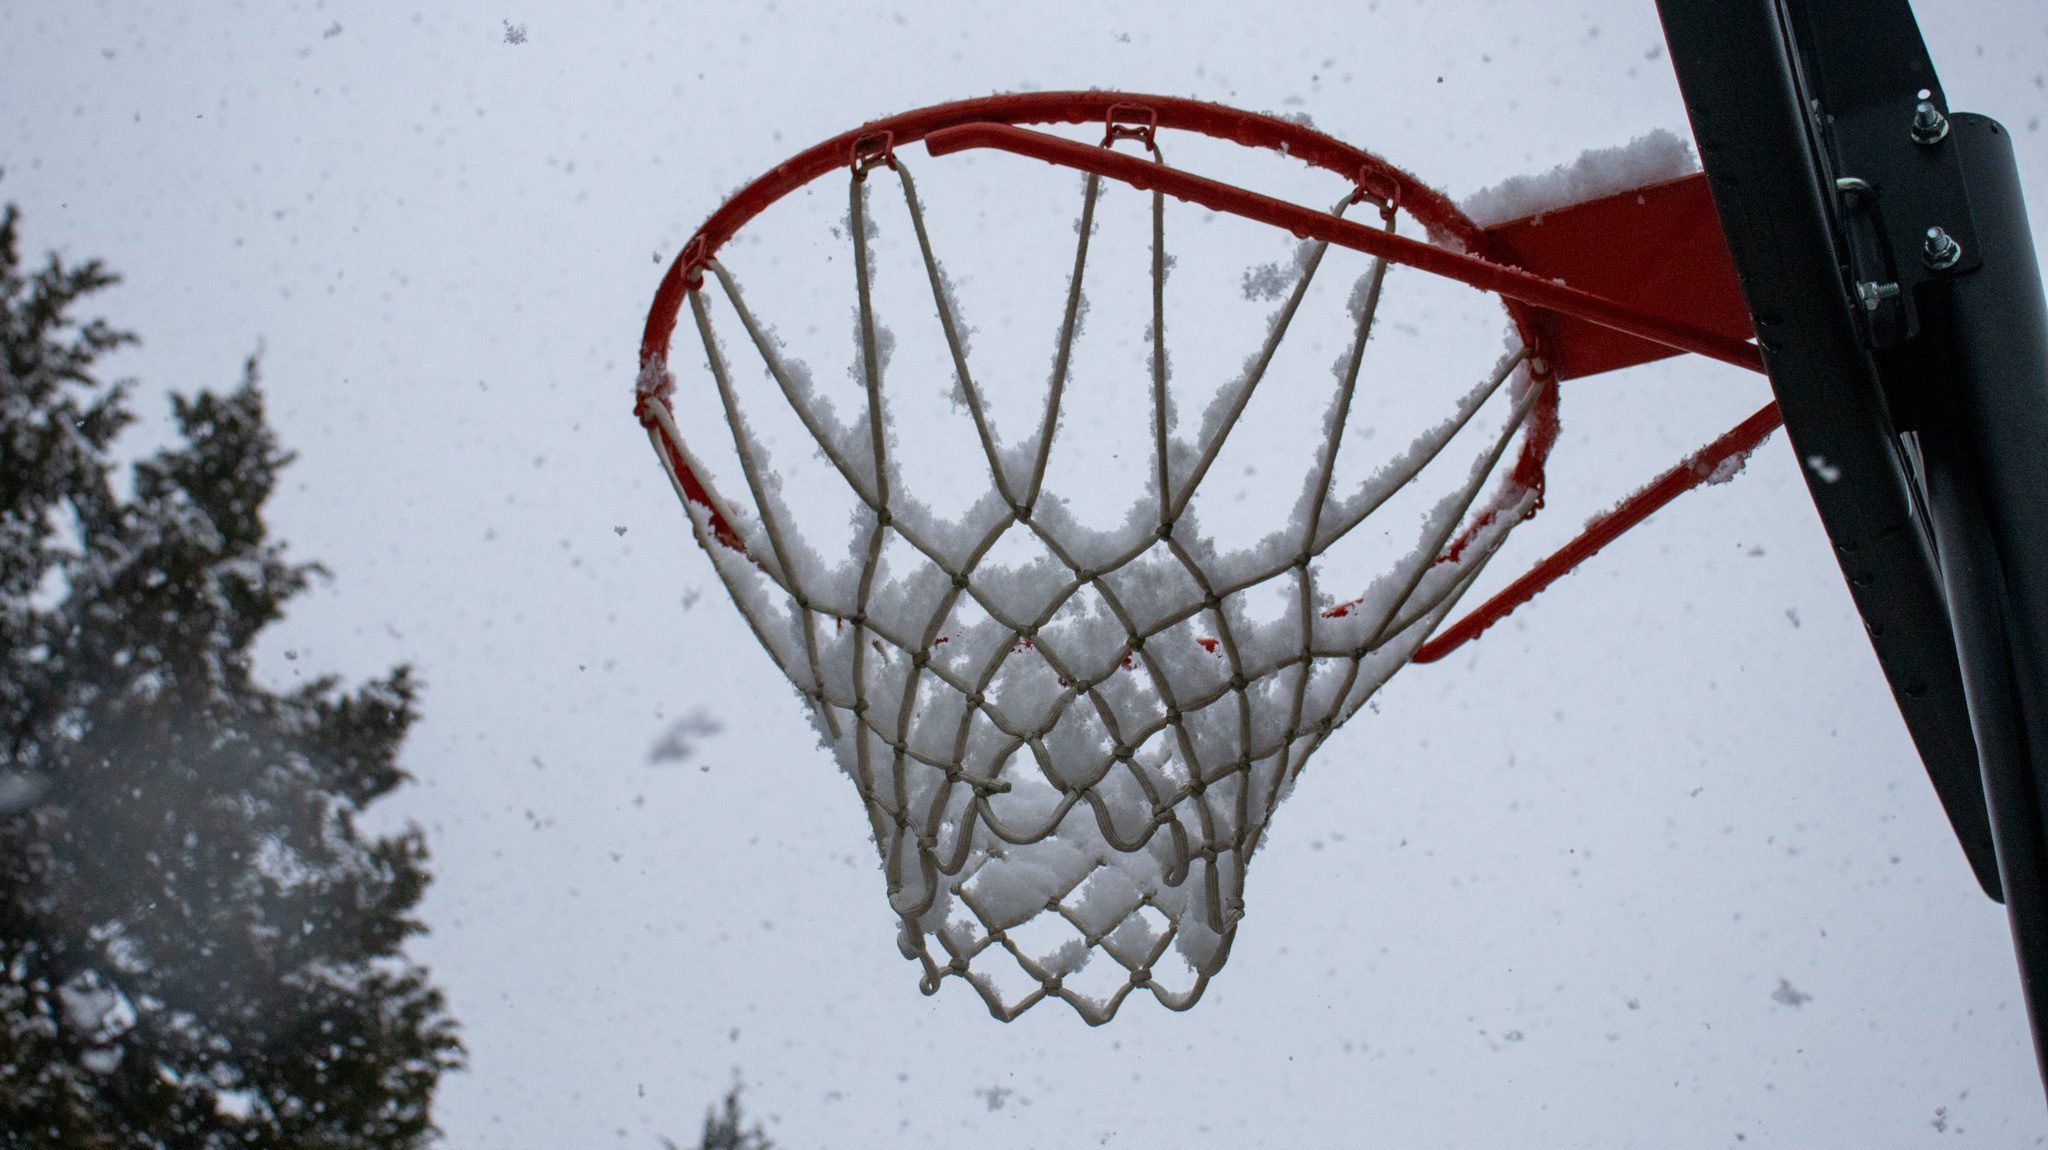 snow on a basketball hoop